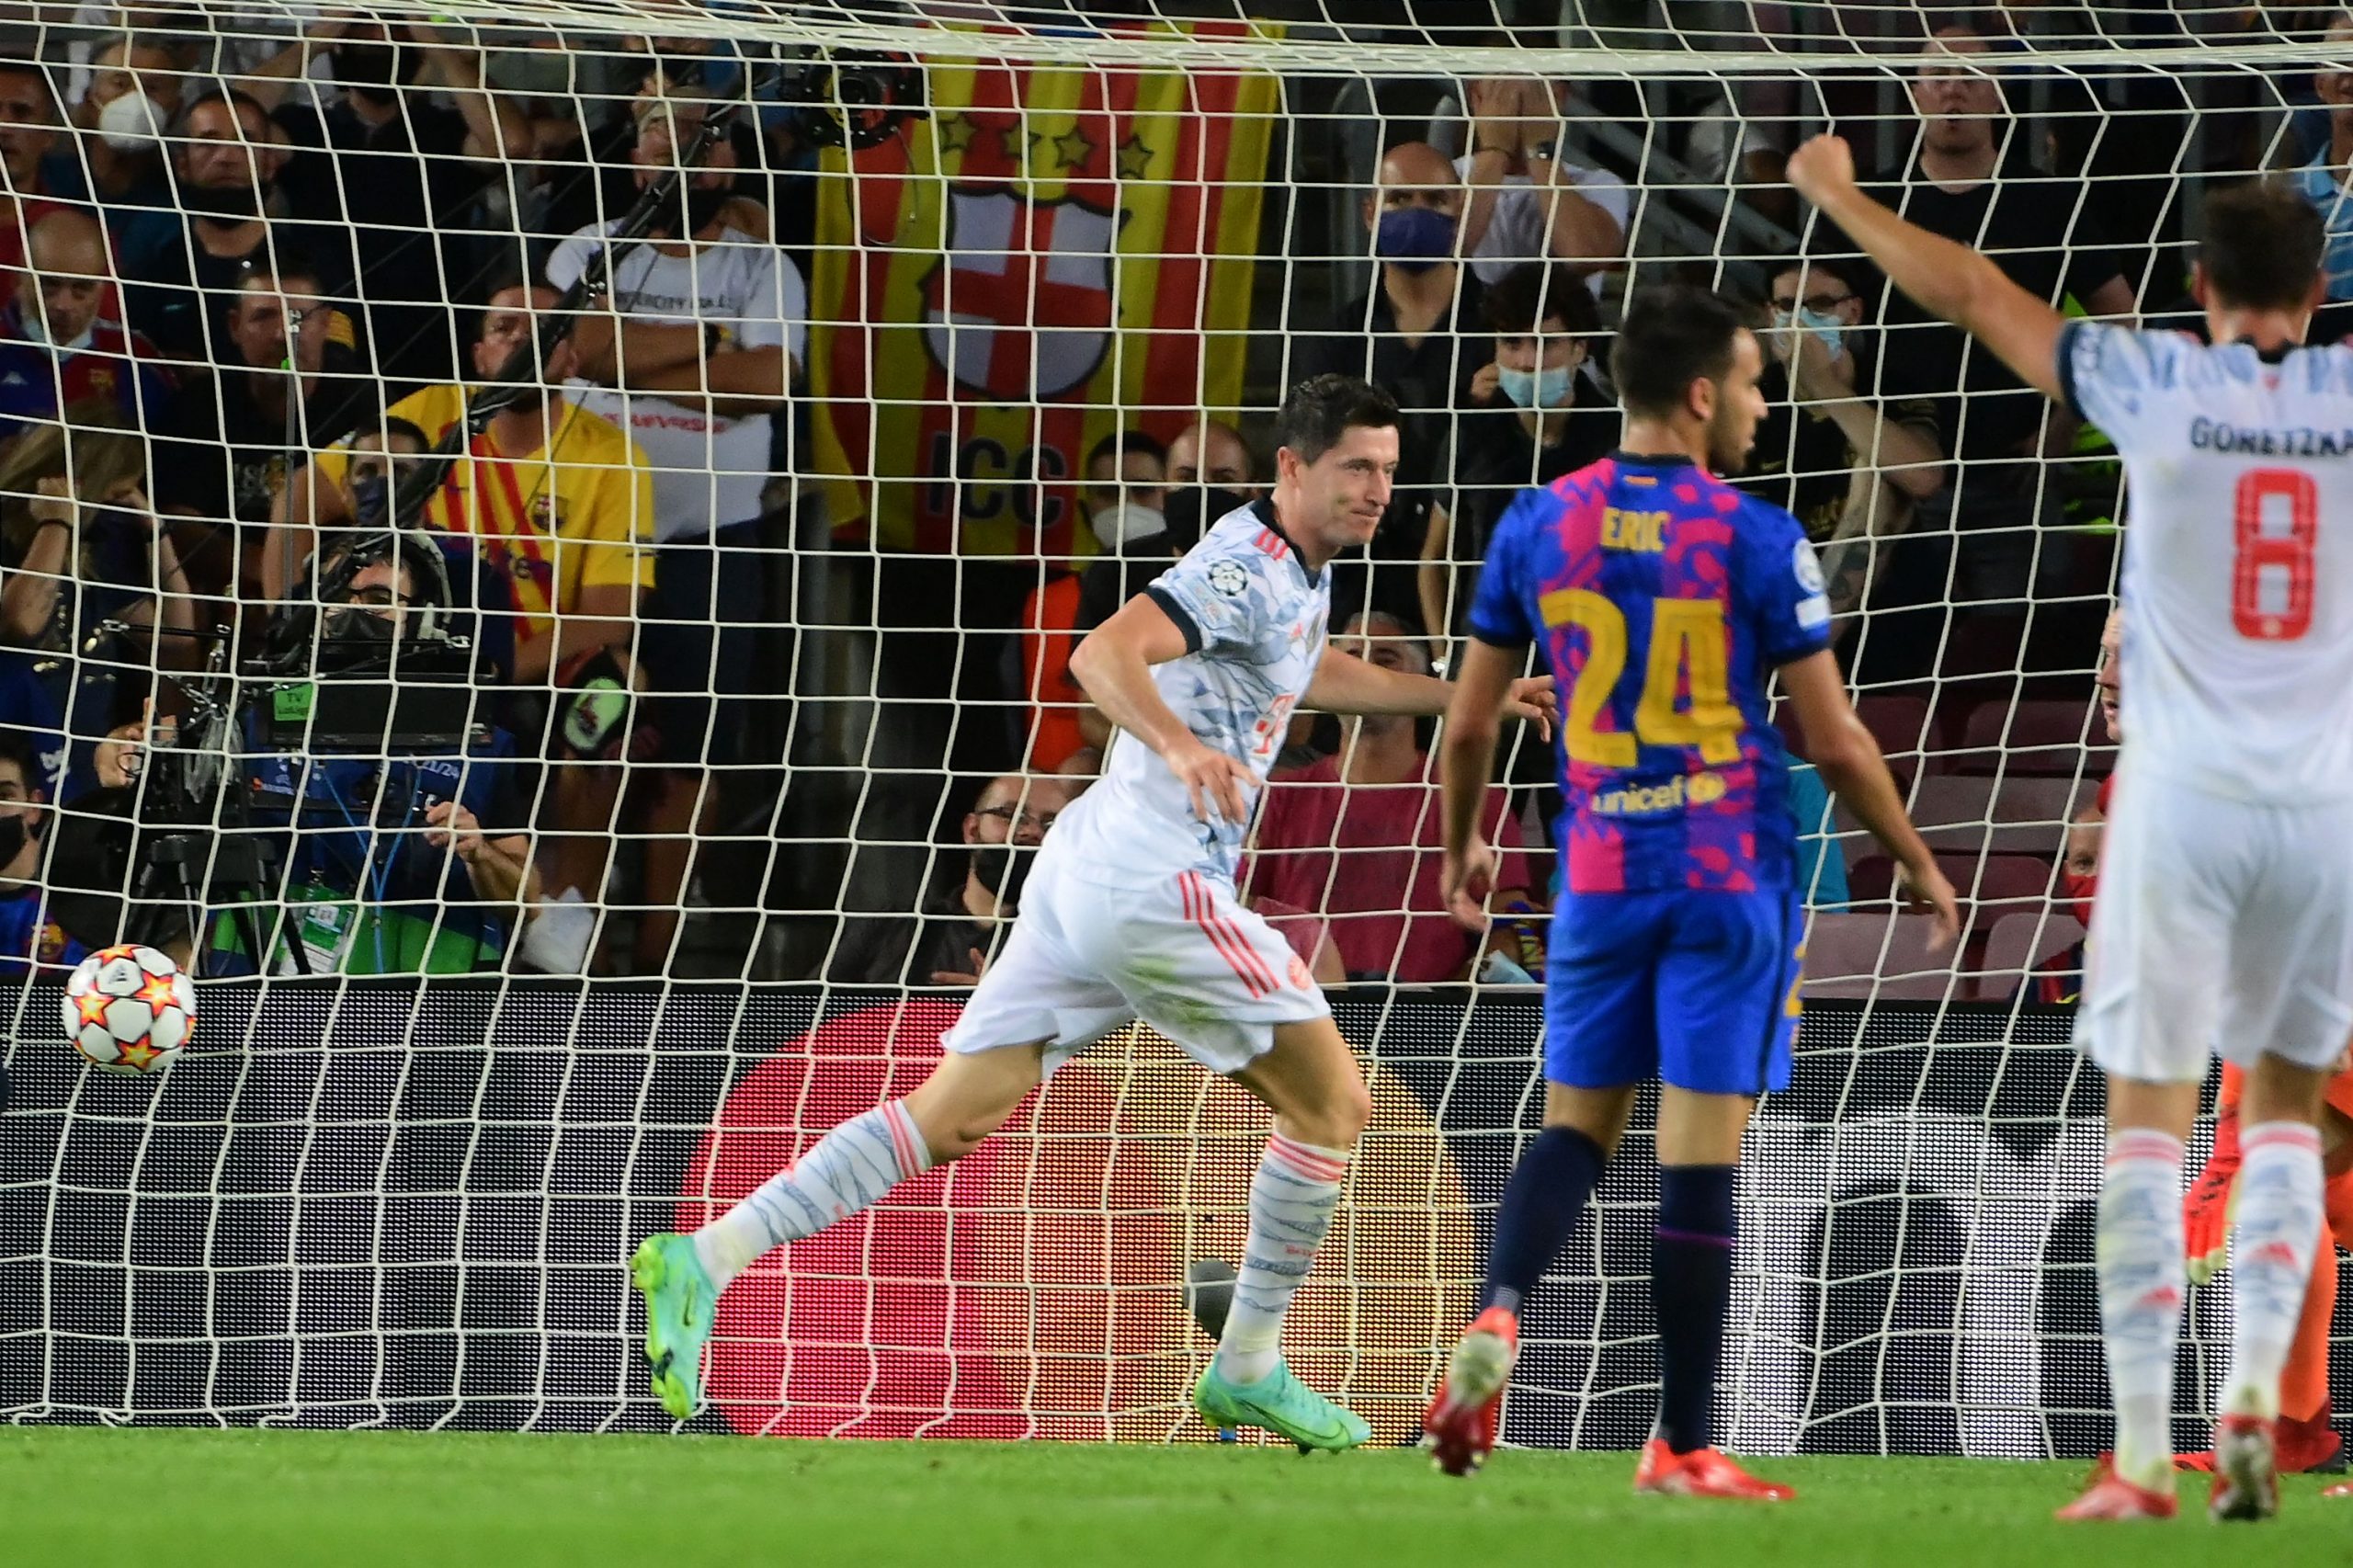 Lewandowski celebrates his goal against Barcelona